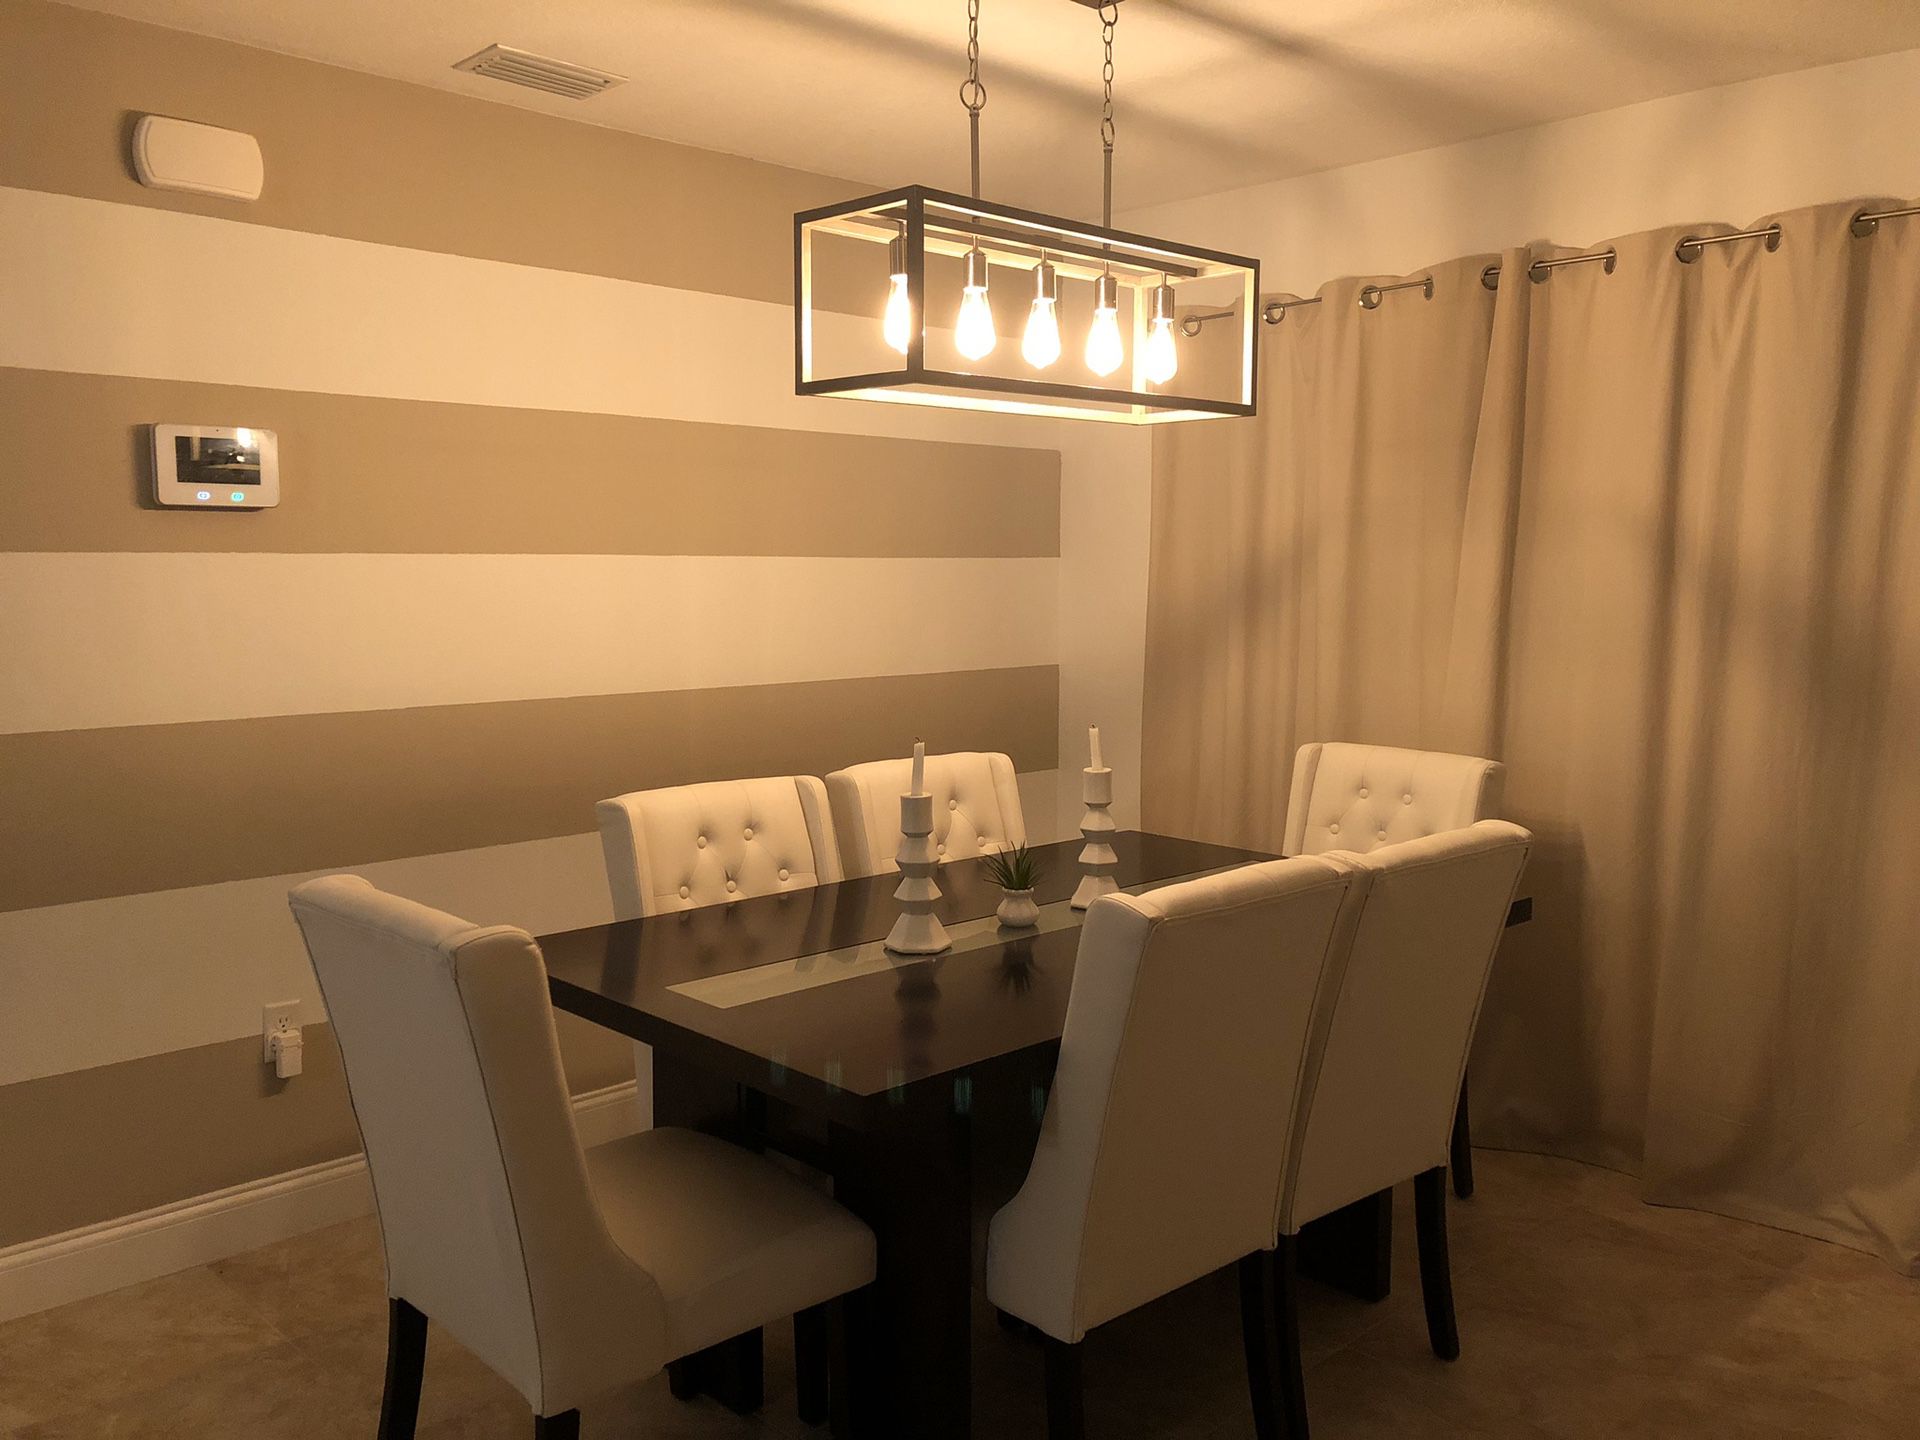 Dining room set - white